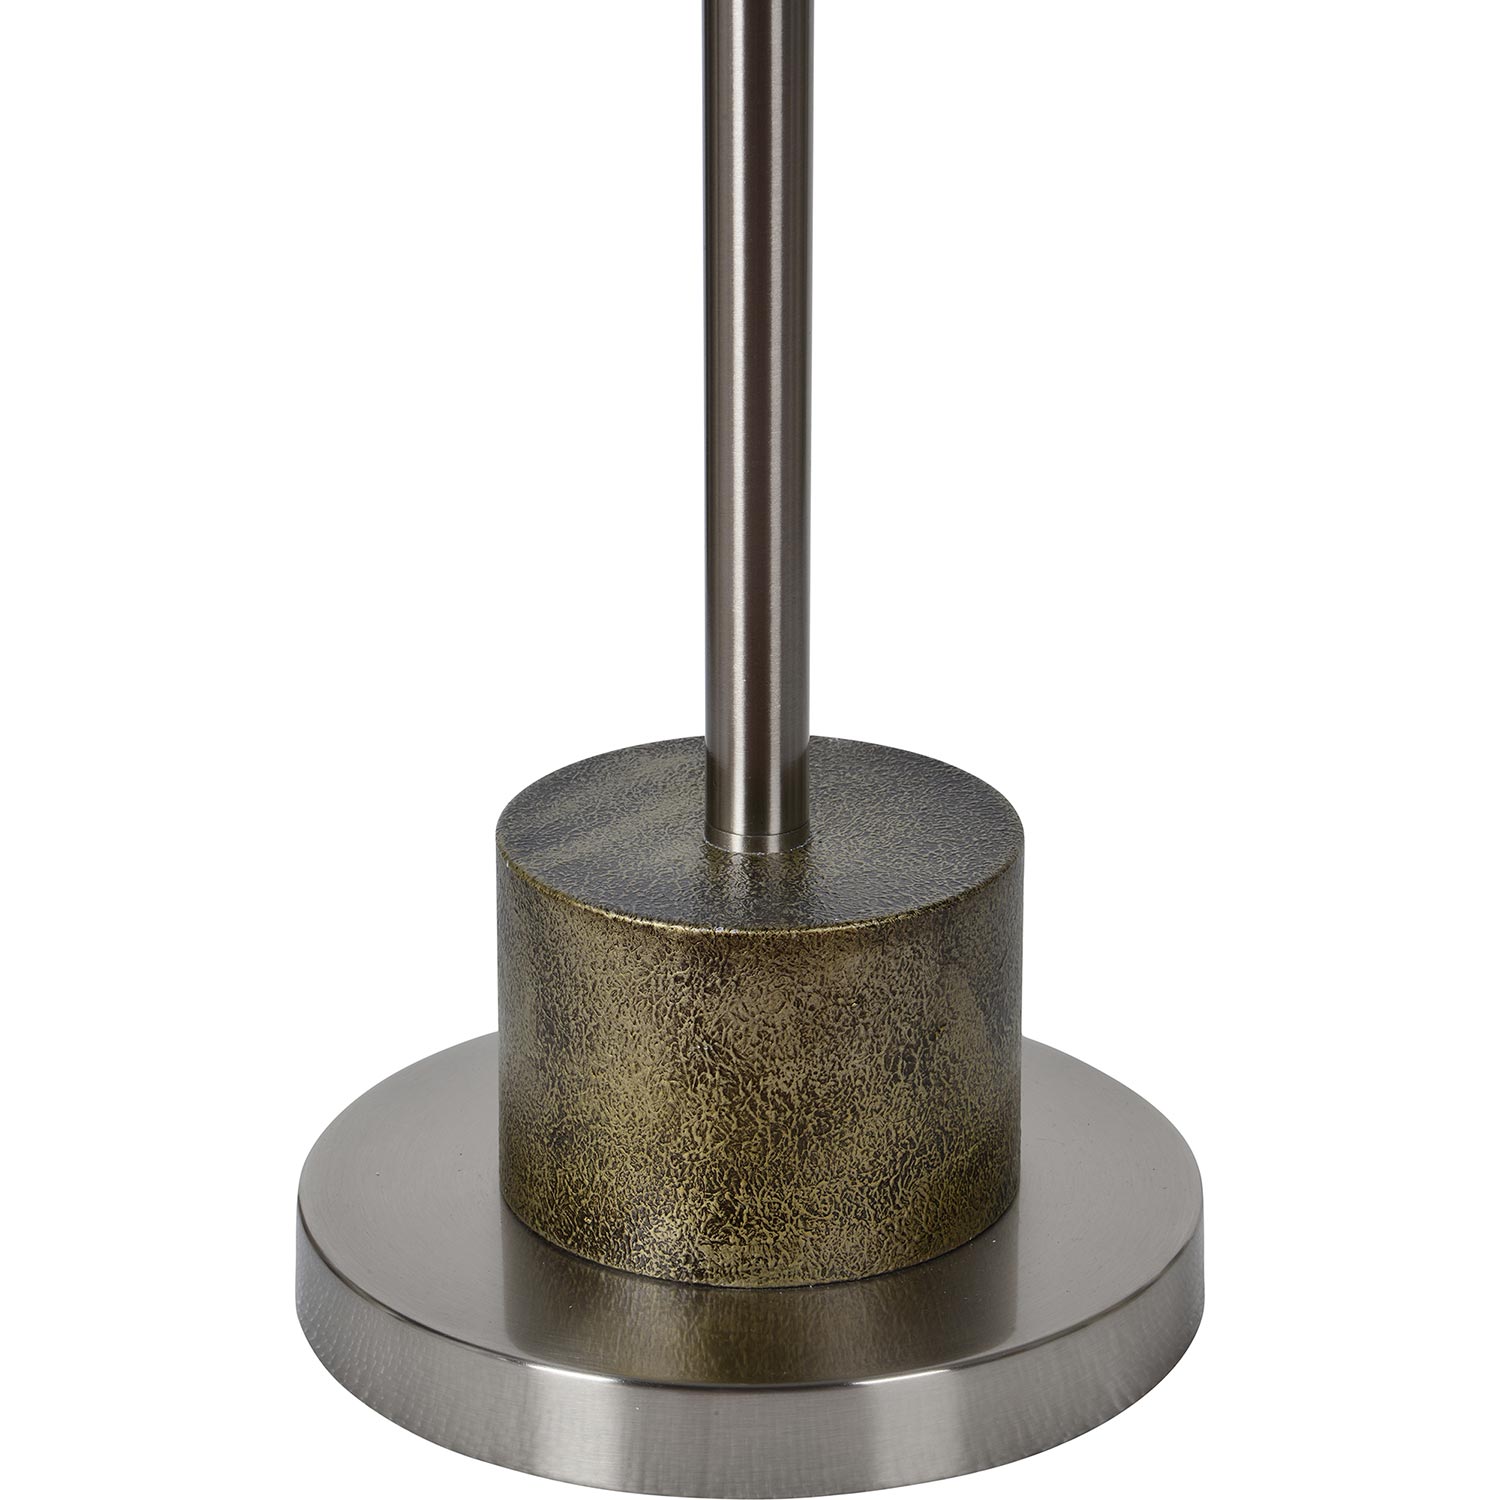 Ren-Wil Stockwell Floor Lamp - Brushed Nickel/Rustic Antique Bronze